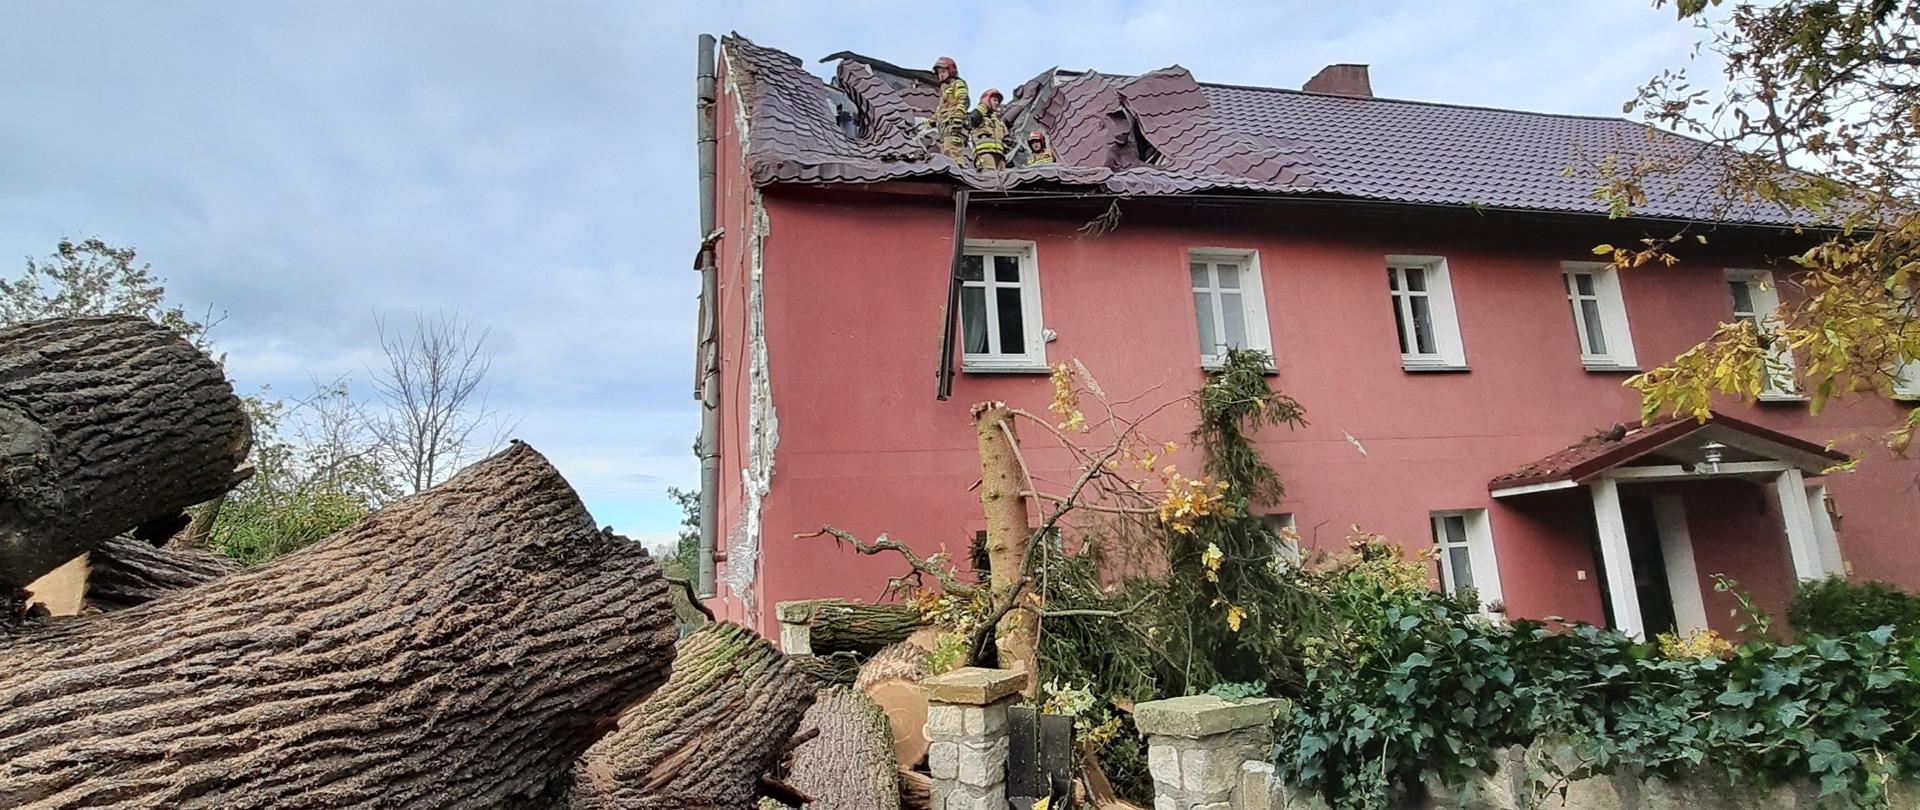 Zdjęcie przedstawia uszkodzony budynek mieszkalny przez powalone drzewo w wyniku silnych podmuchów wiatru. 